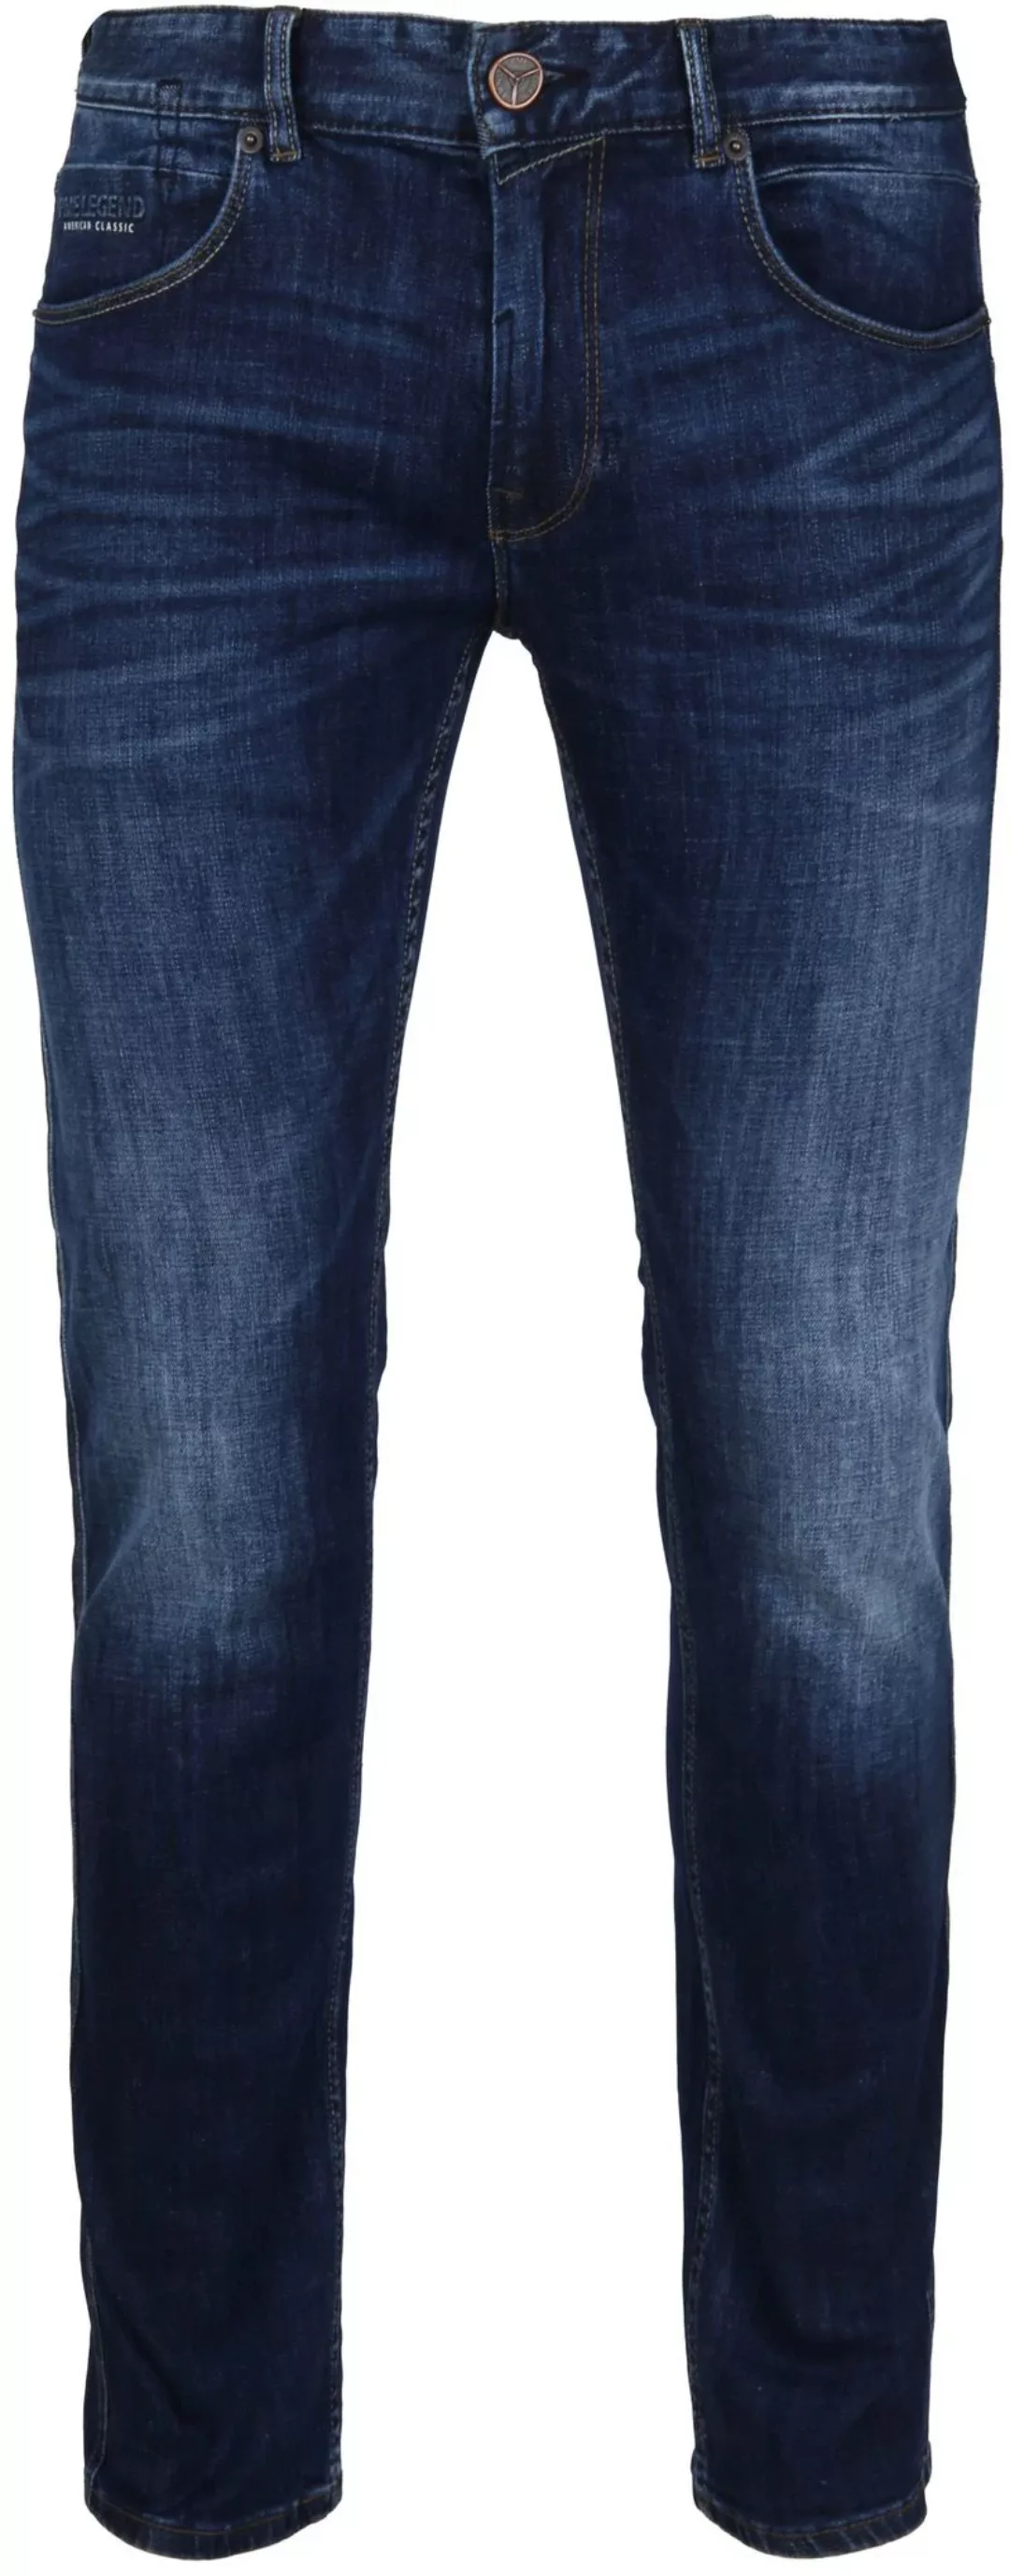 PME Legend Nightflight Jeans Dunkelblau - Größe W 32 - L 34 günstig online kaufen